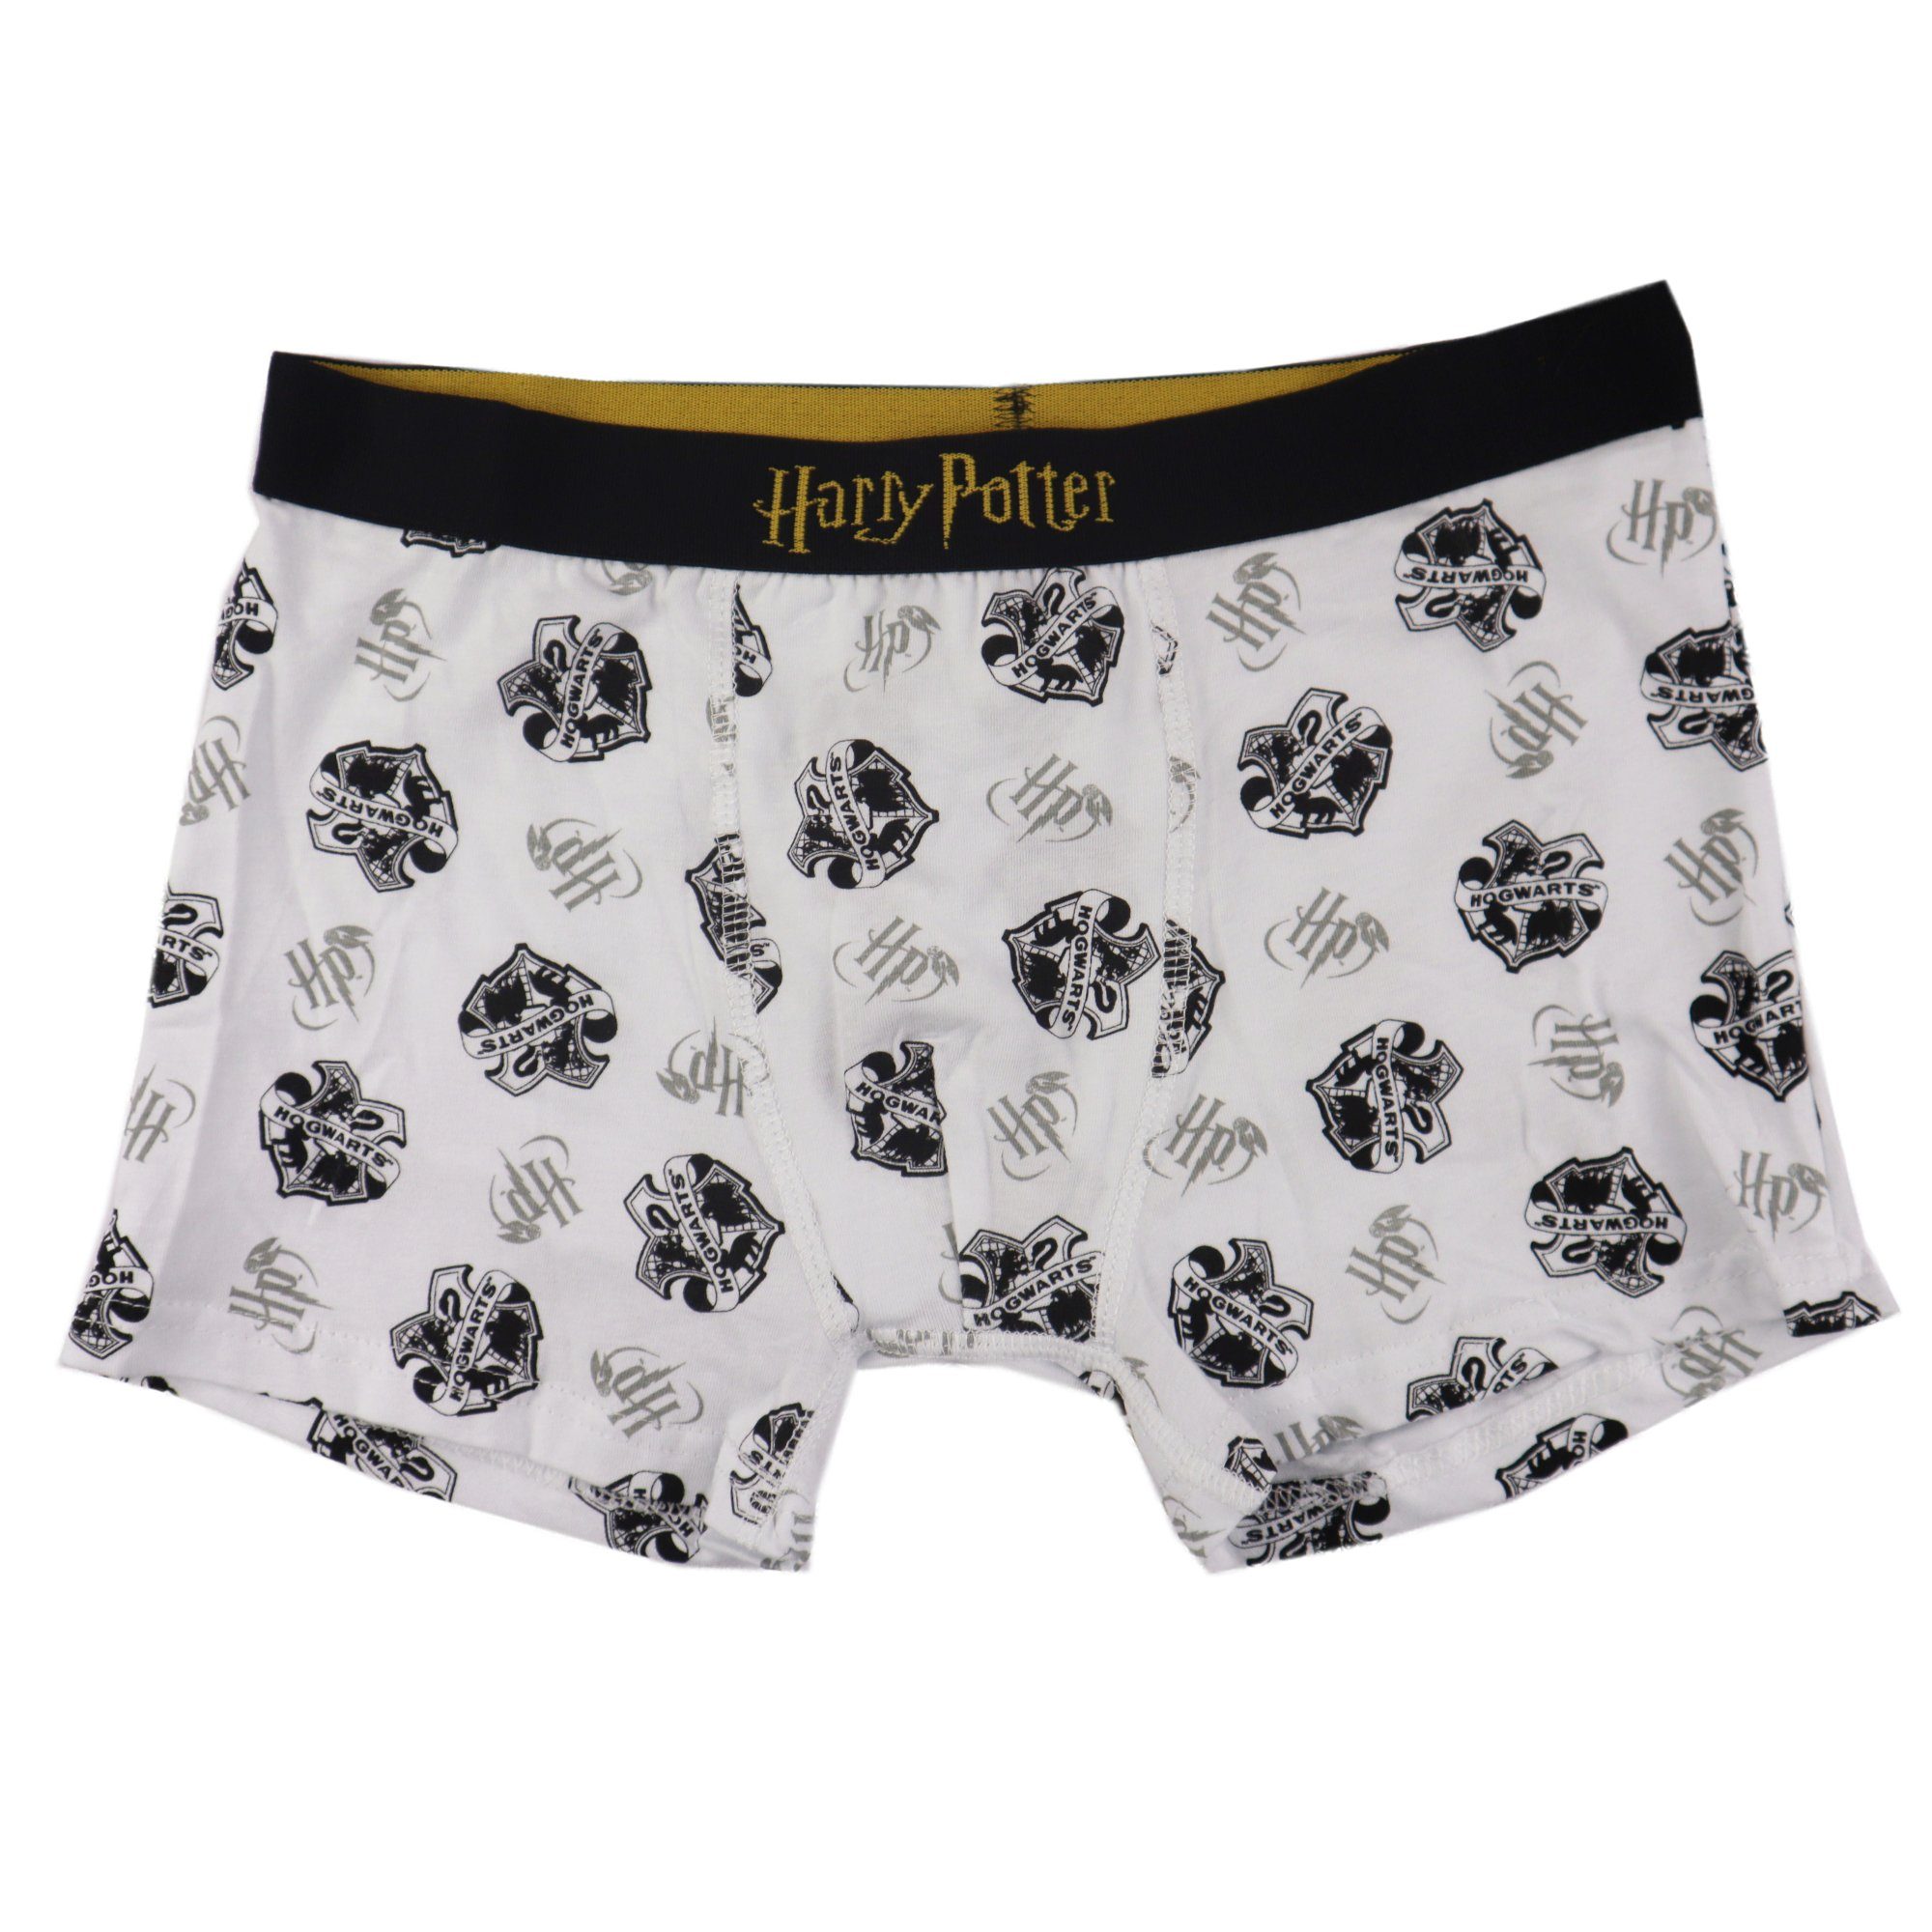 Potter Hogwarts Pack Jungen 2er Boxershorts Unterhose 134 Harry Boxershorts Harry Gr. 164 bis Potter